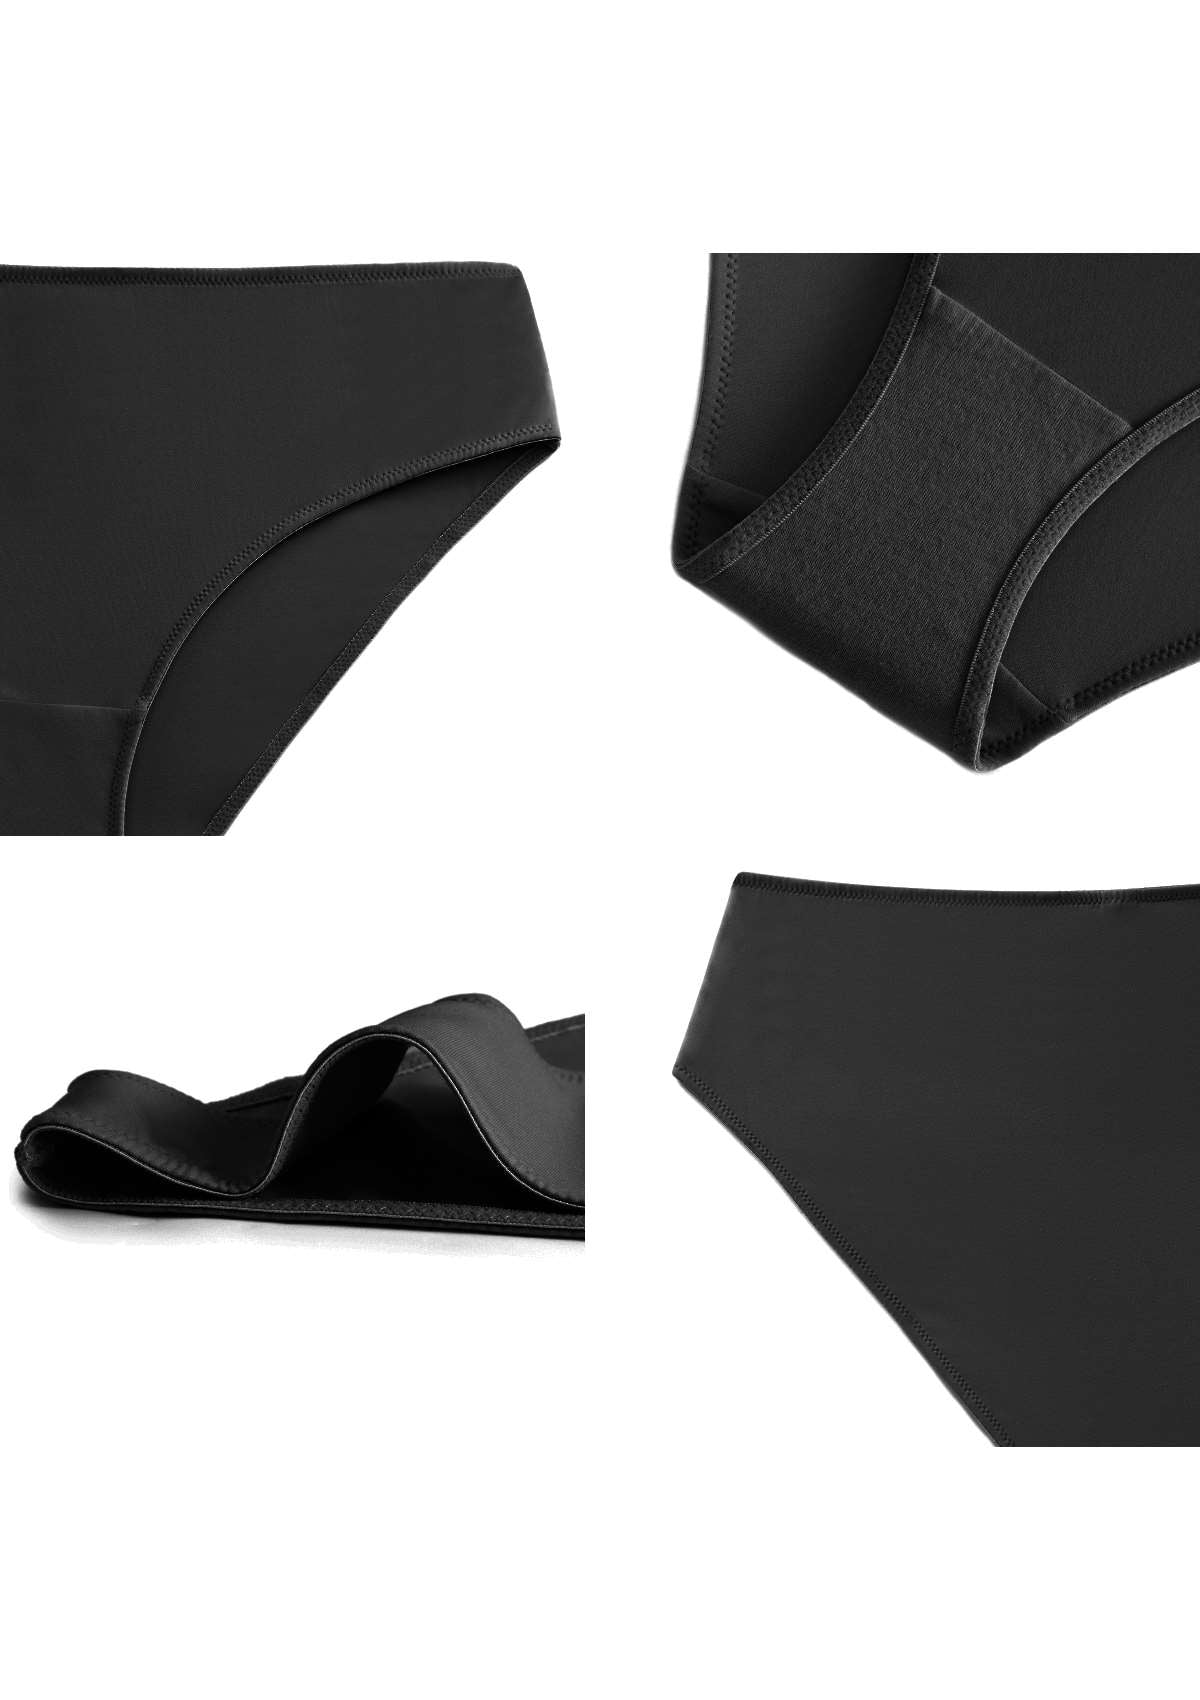 HSIA Patricia Smooth Soft Stretch Comfort High-Rise Brief Underwear - XXXL / Beige